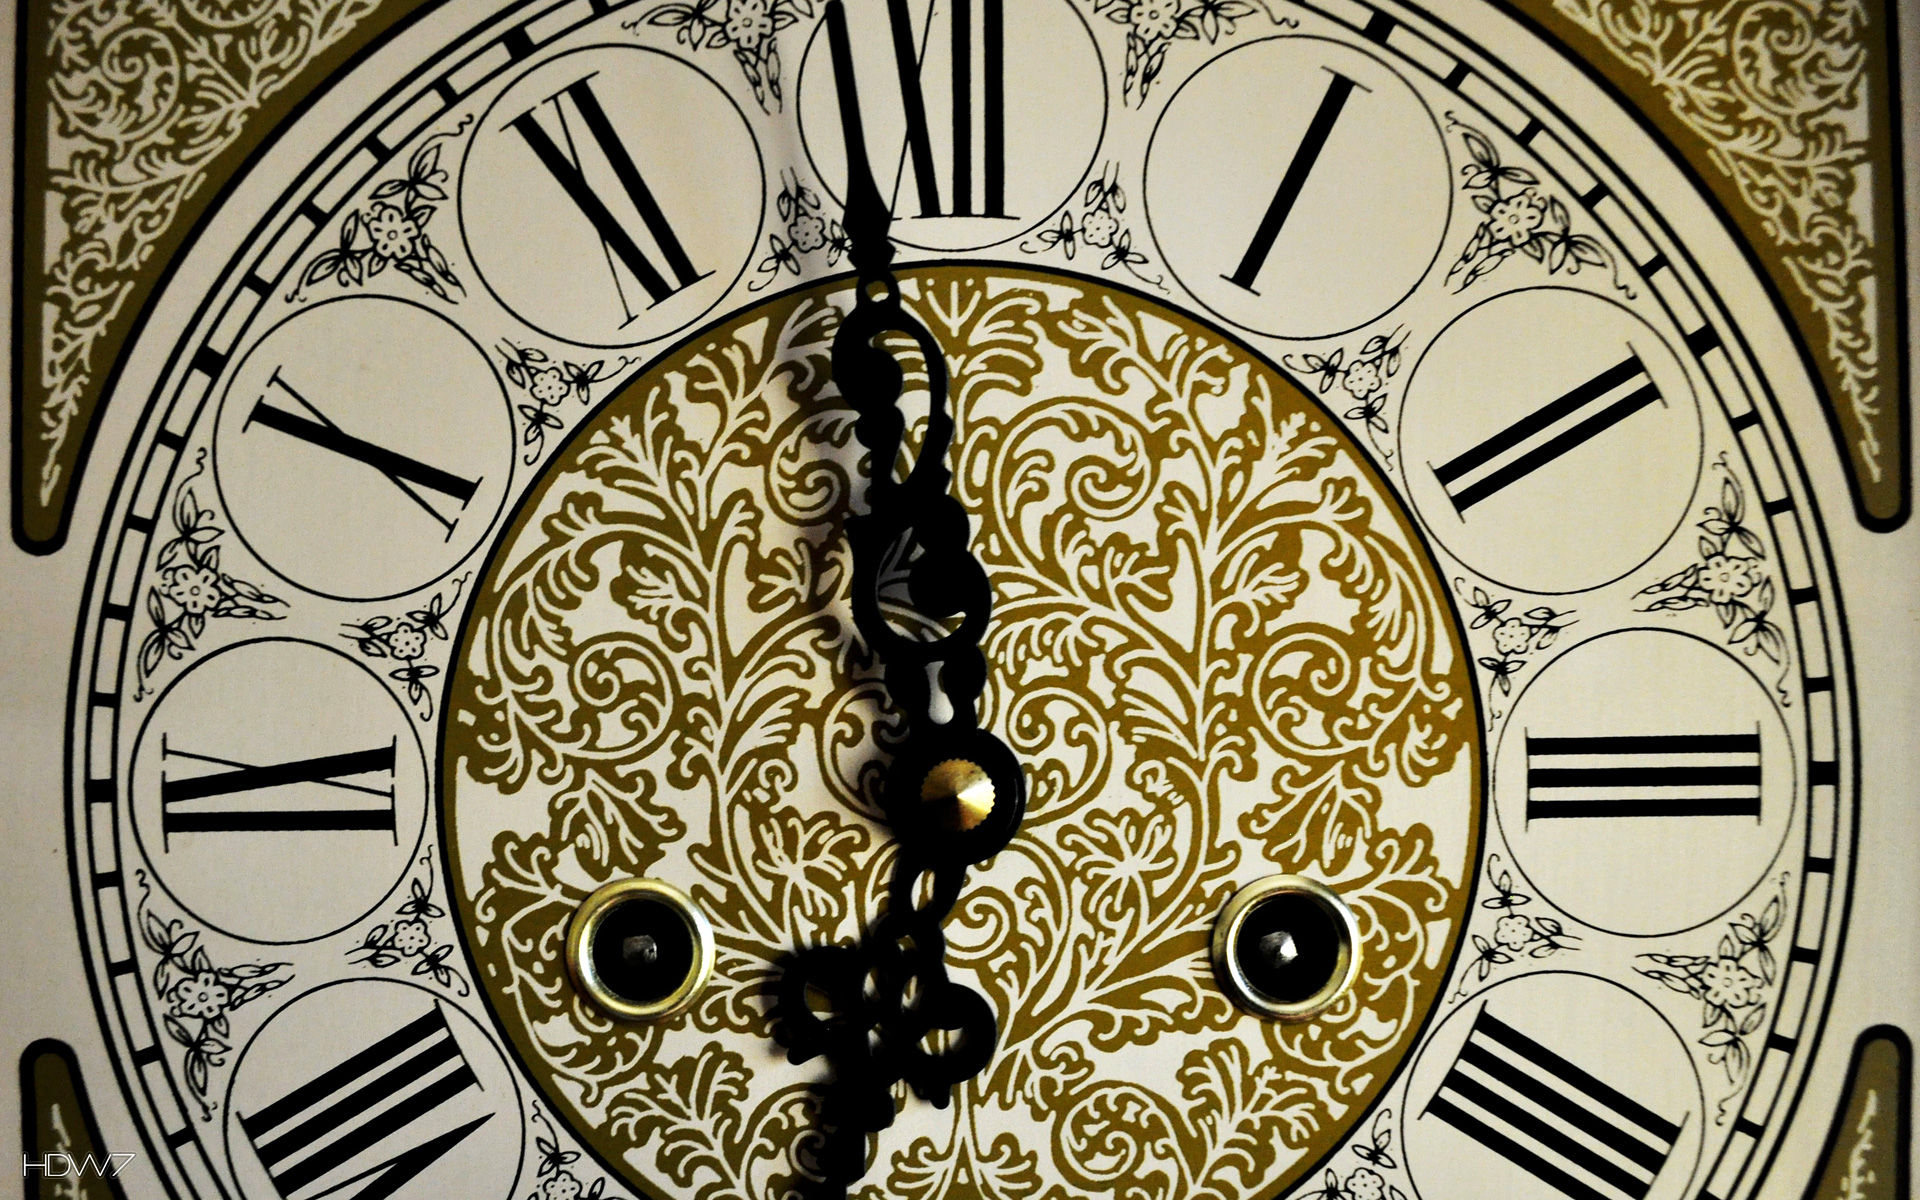 Antique Clock Roman Numerals - Antique Clock Hd - HD Wallpaper 